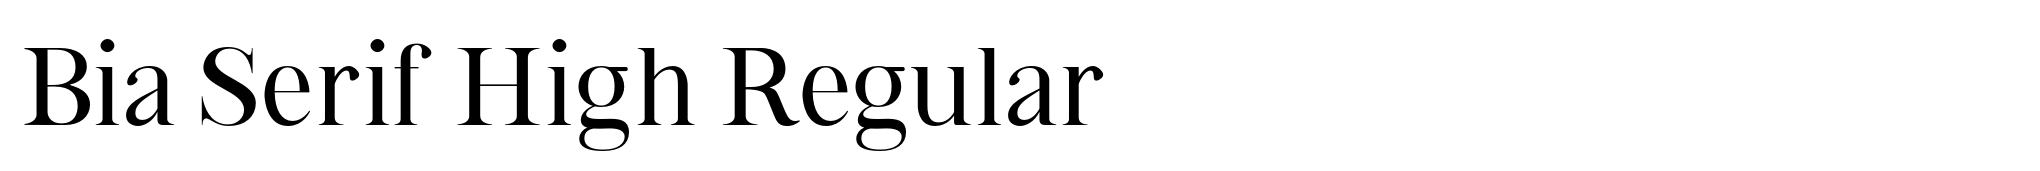 Bia Serif High Regular image